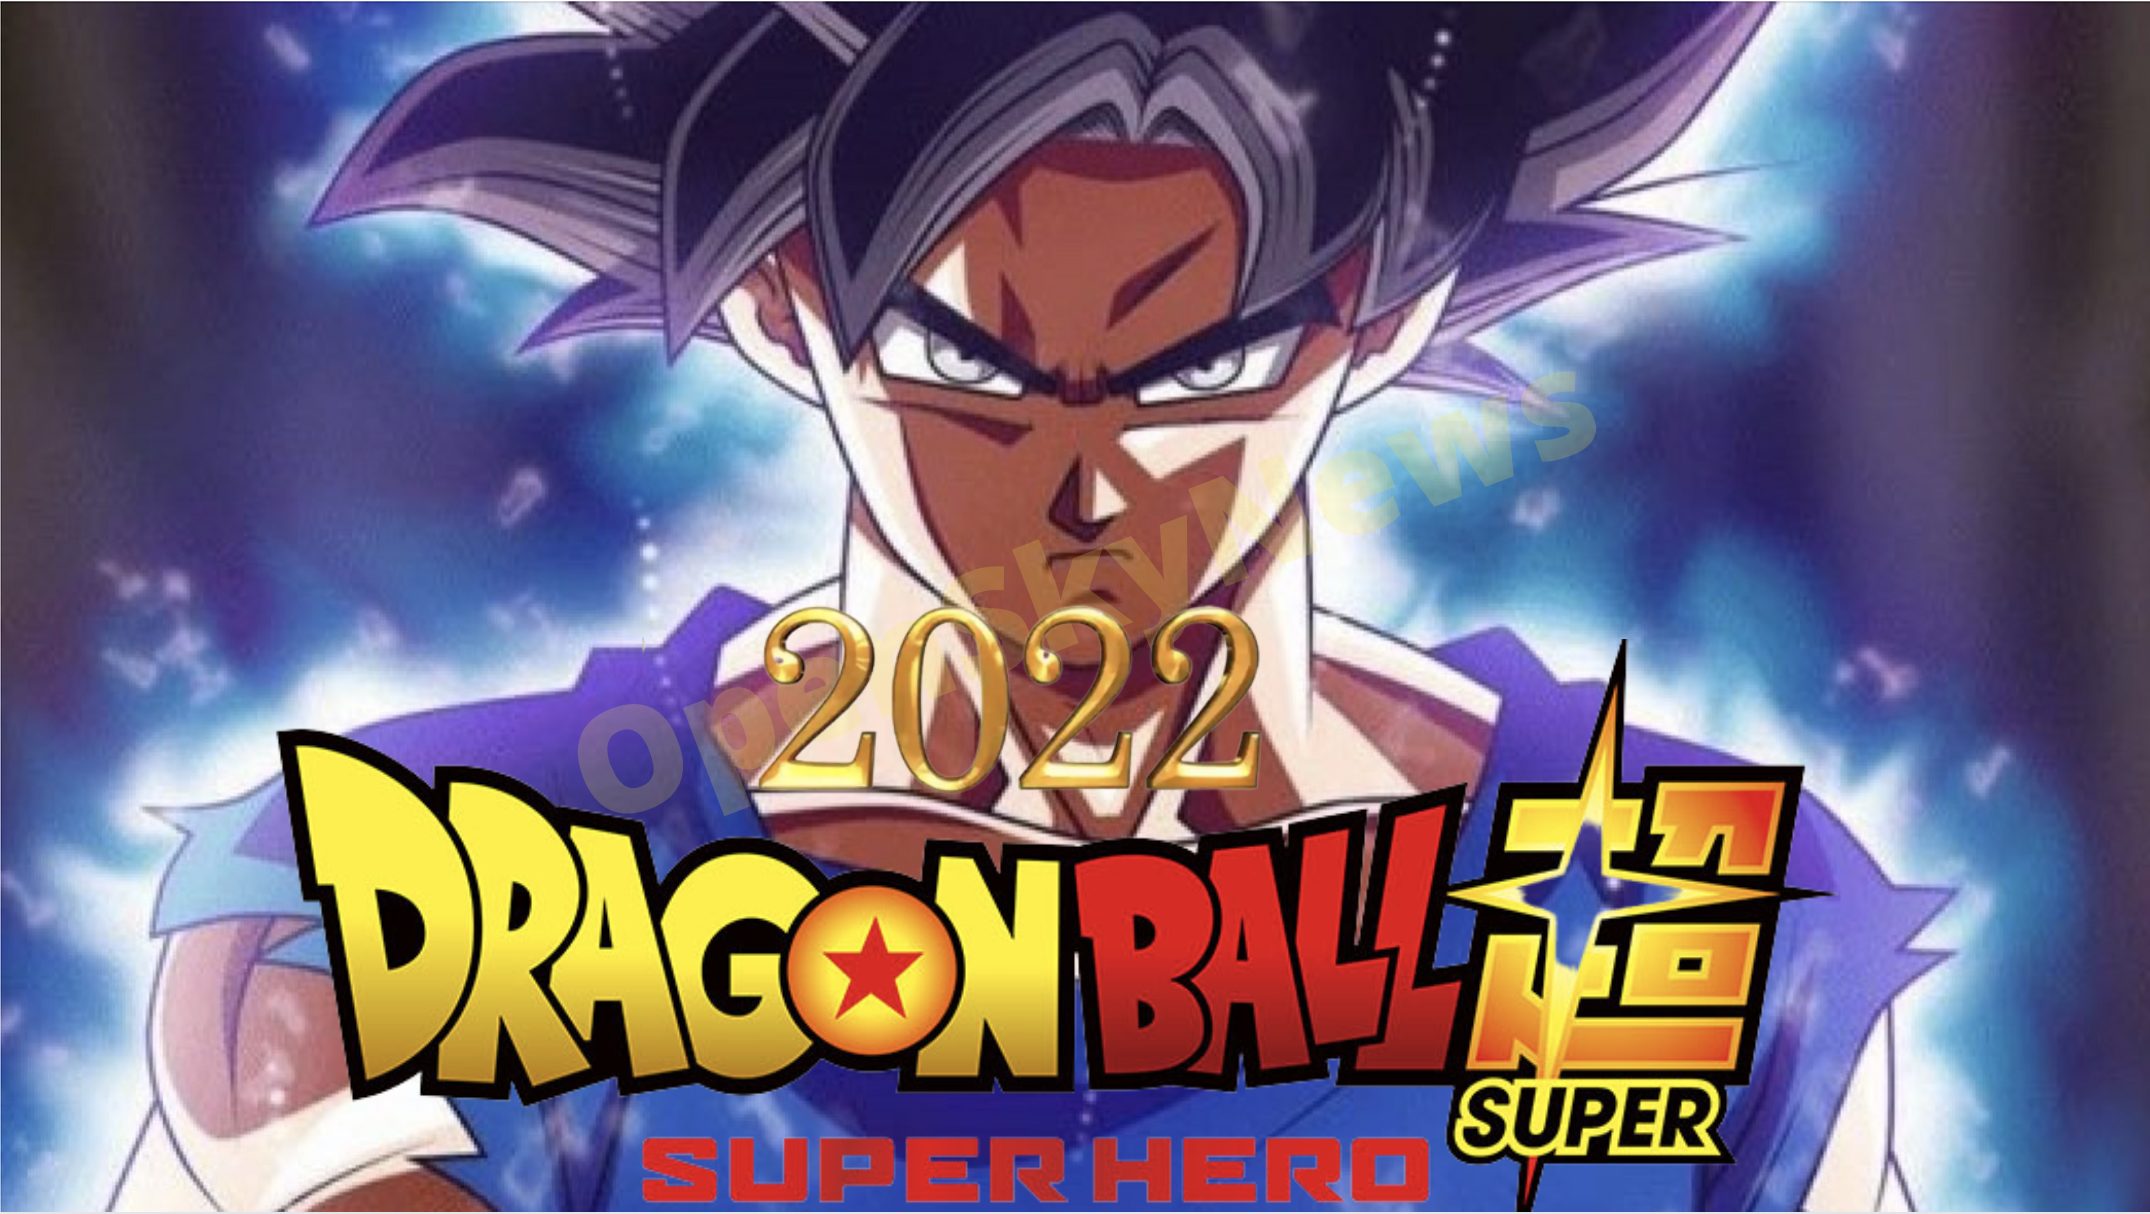 Dragon ball Super: Super Hero